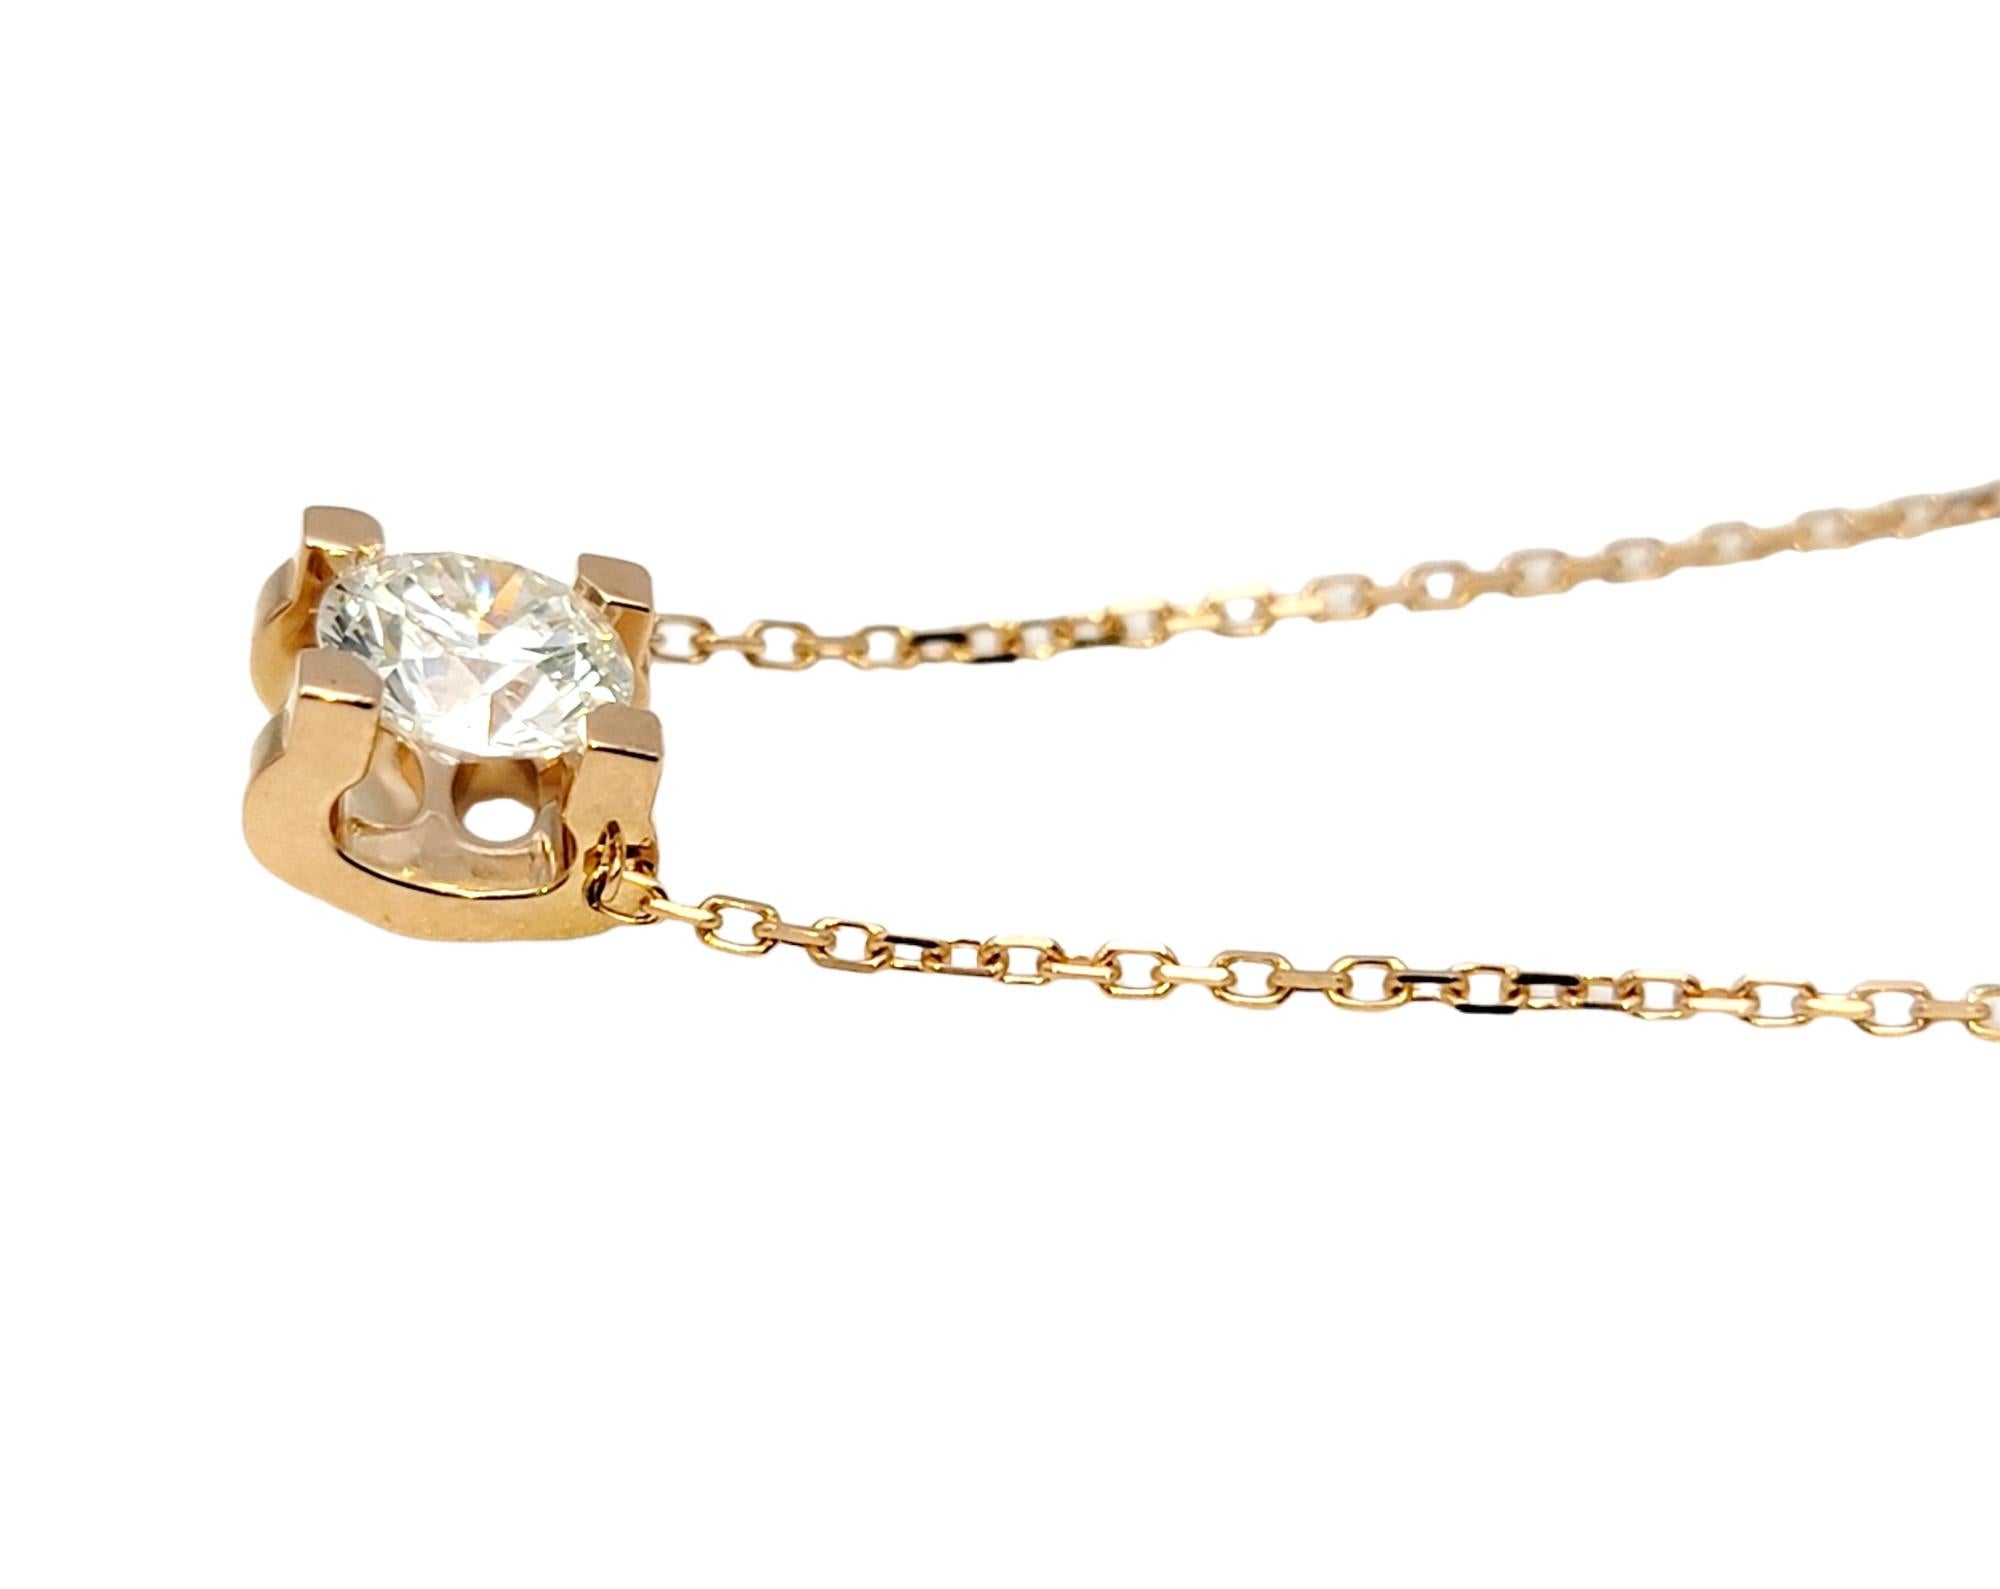 Taille ronde Cartier C de Cartier, collier solitaire en or rose 18 carats avec diamants certifiés GIA F/VS1